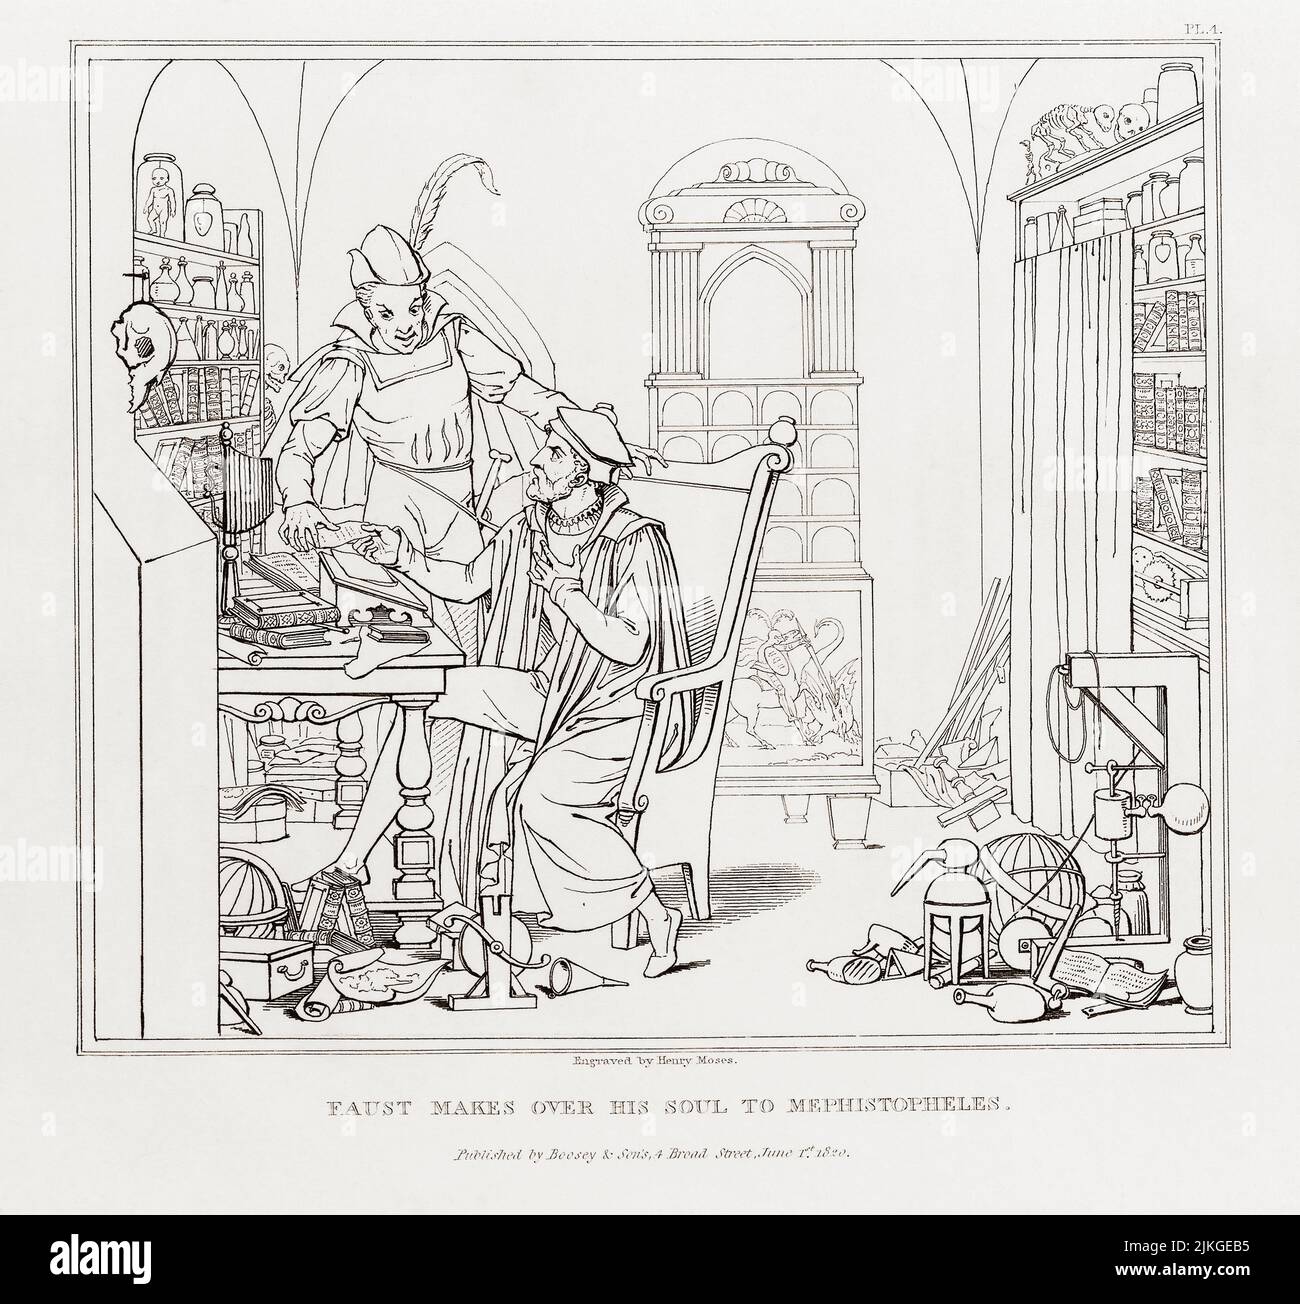 Faust überlässt Mephistopheles seine Seele. Nach einer Illustration des deutschen Künstlers Moritz Retsch in einer englischen Ausgabe von Goethes Faustus von 1824. Die Gravur wurde von Henry Moses angefertigt. Faust verkauft seine Seele an den Teufel. Stockfoto